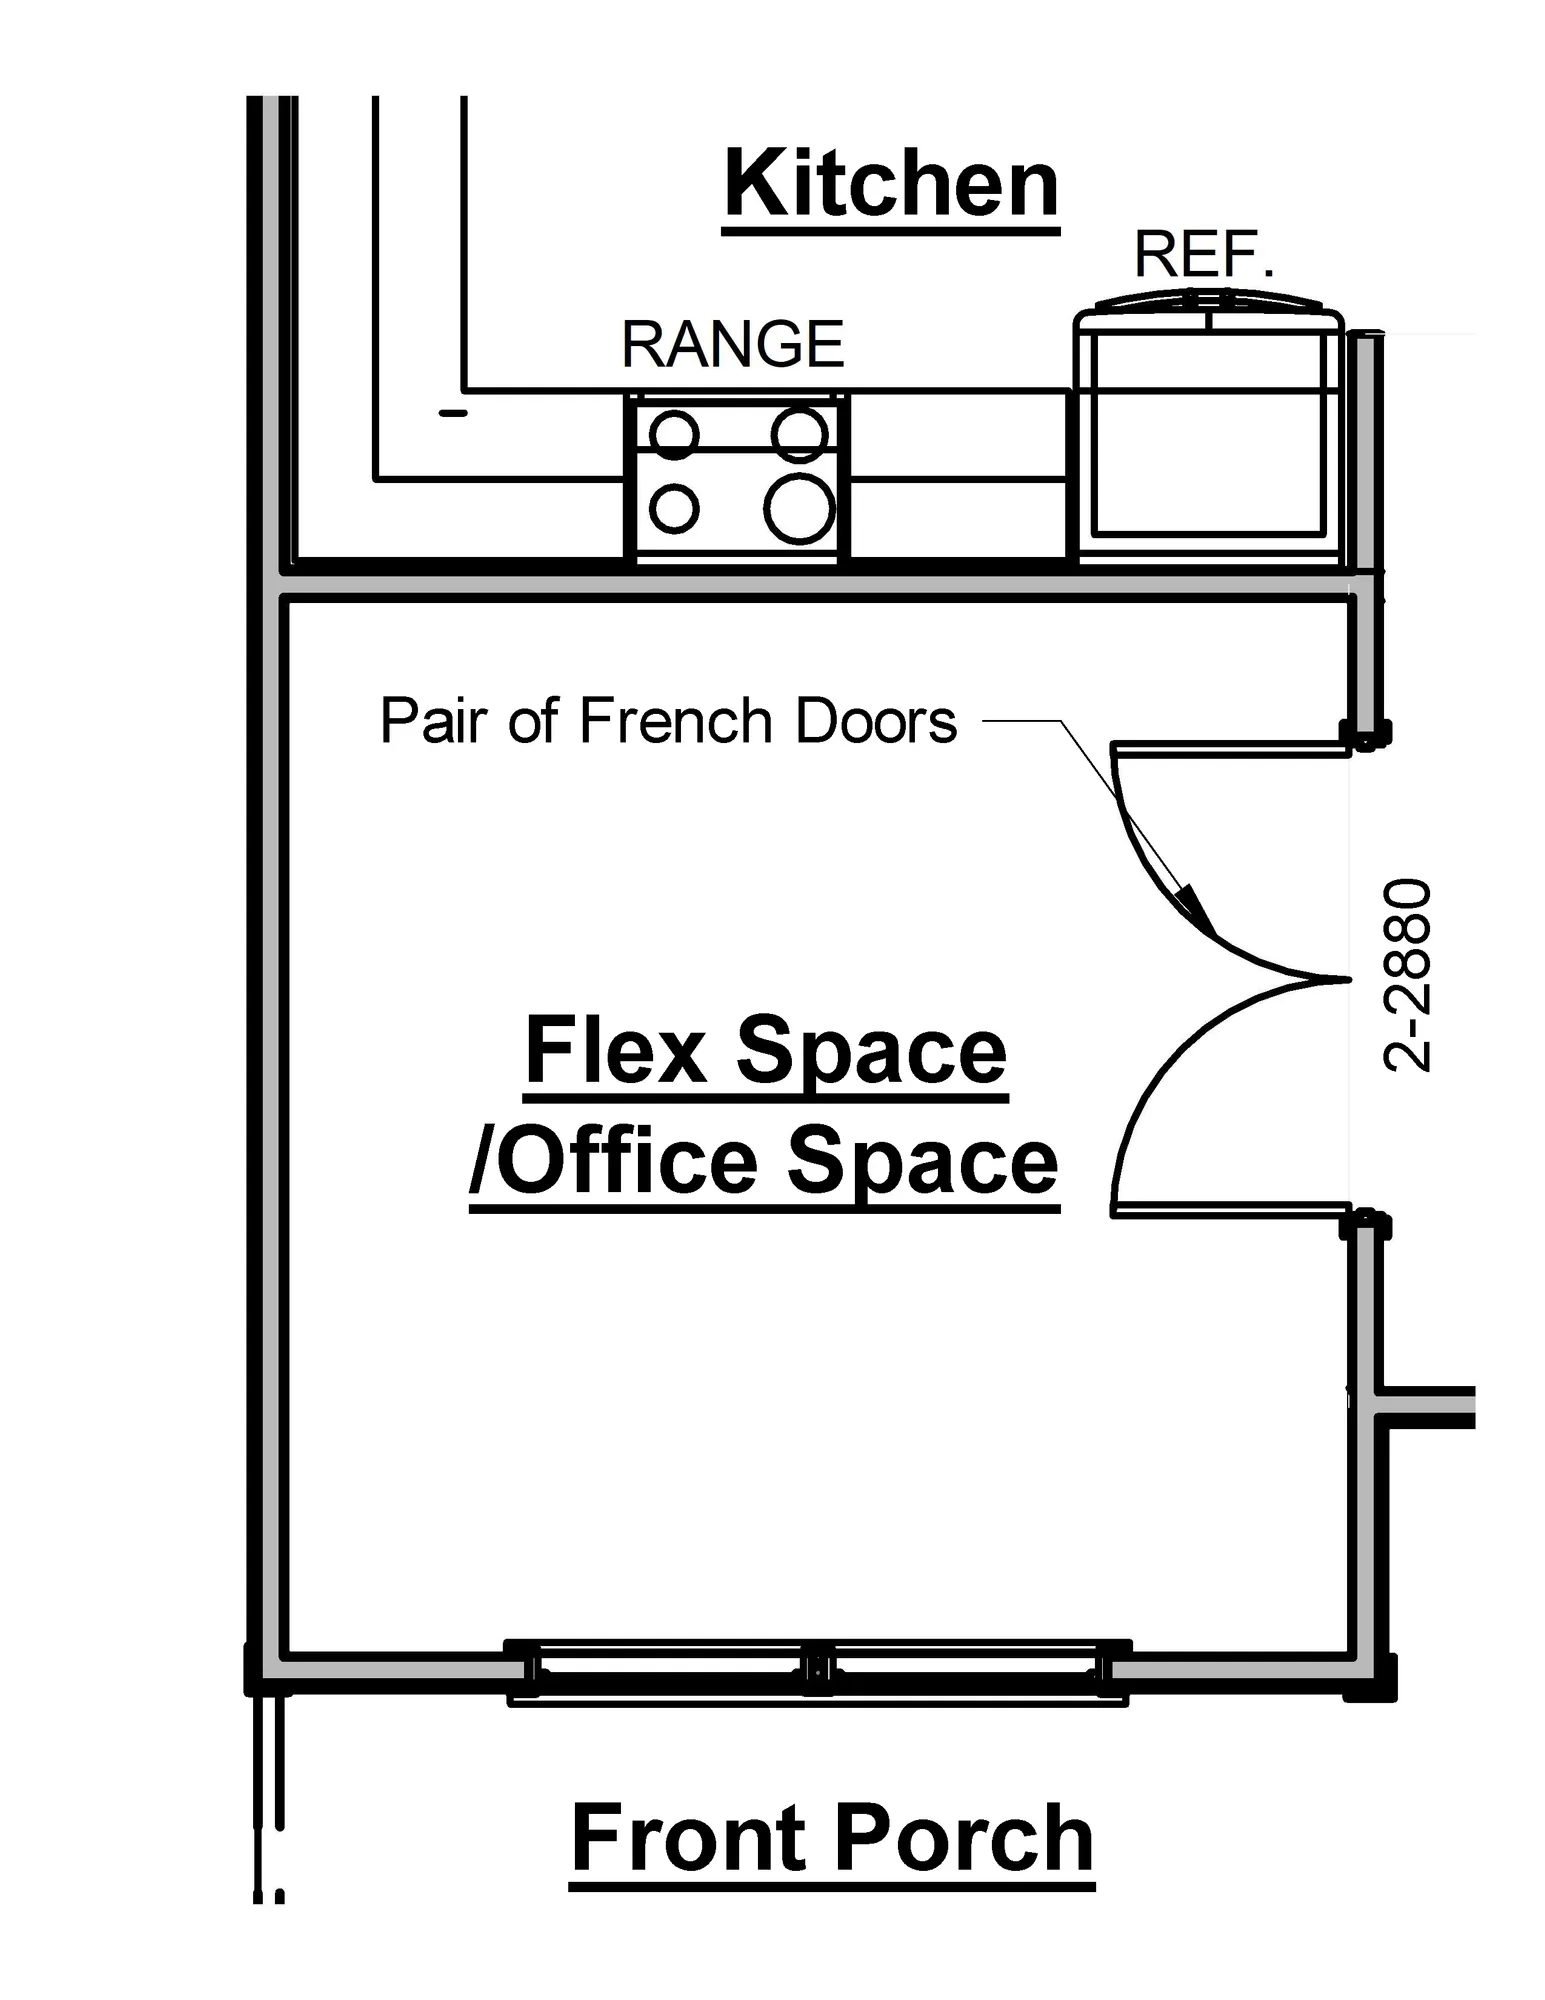 Flex Room Door Option - undefined